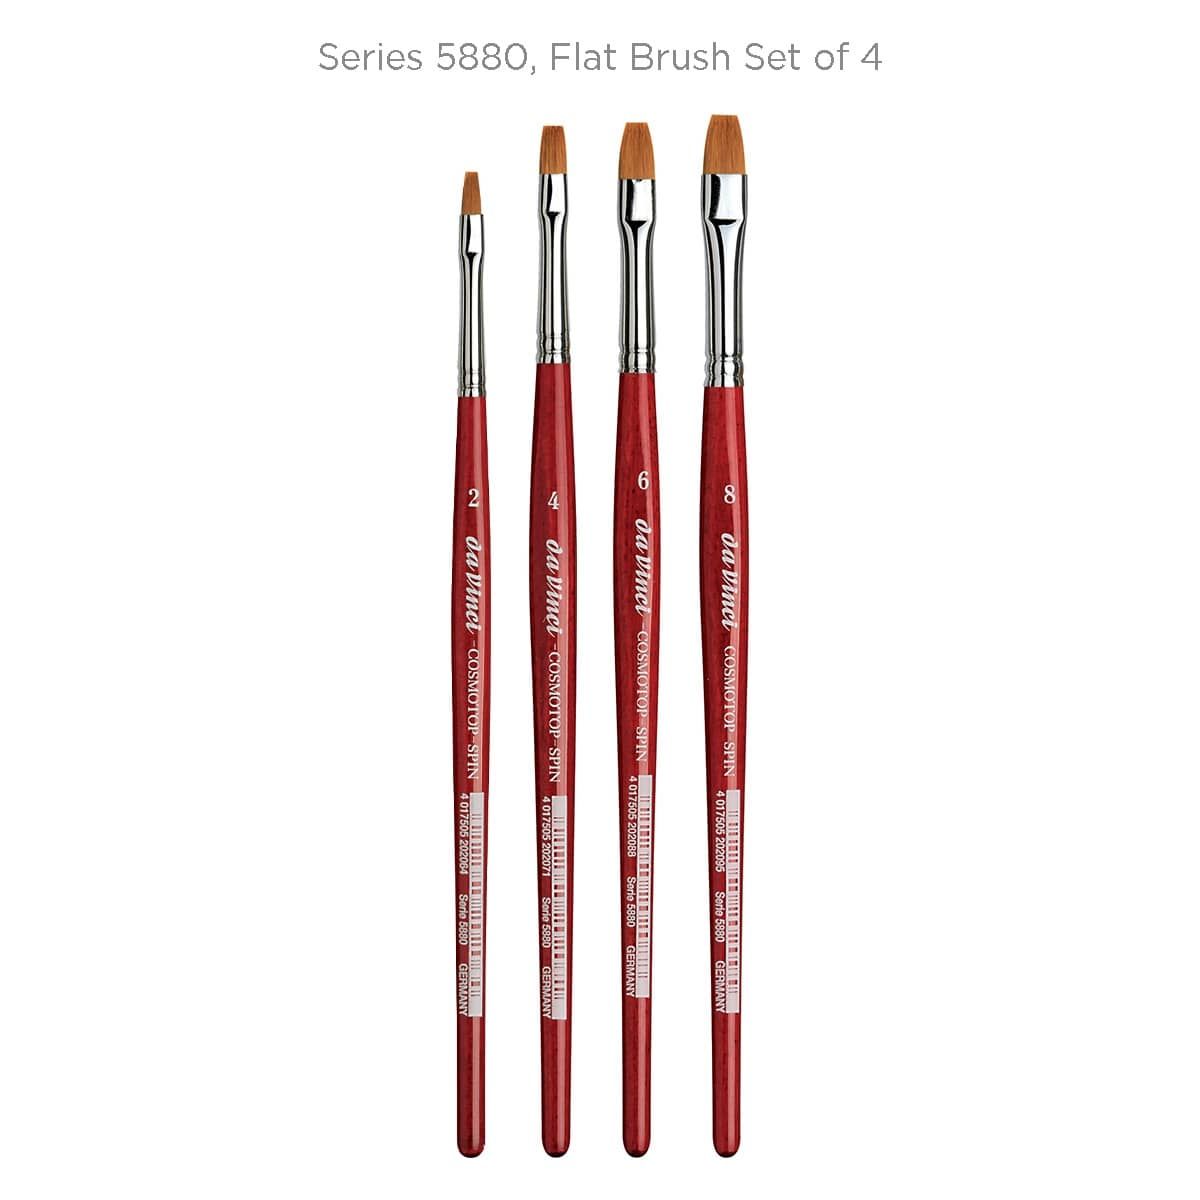 Series 5880, Flat Brush Set of 4